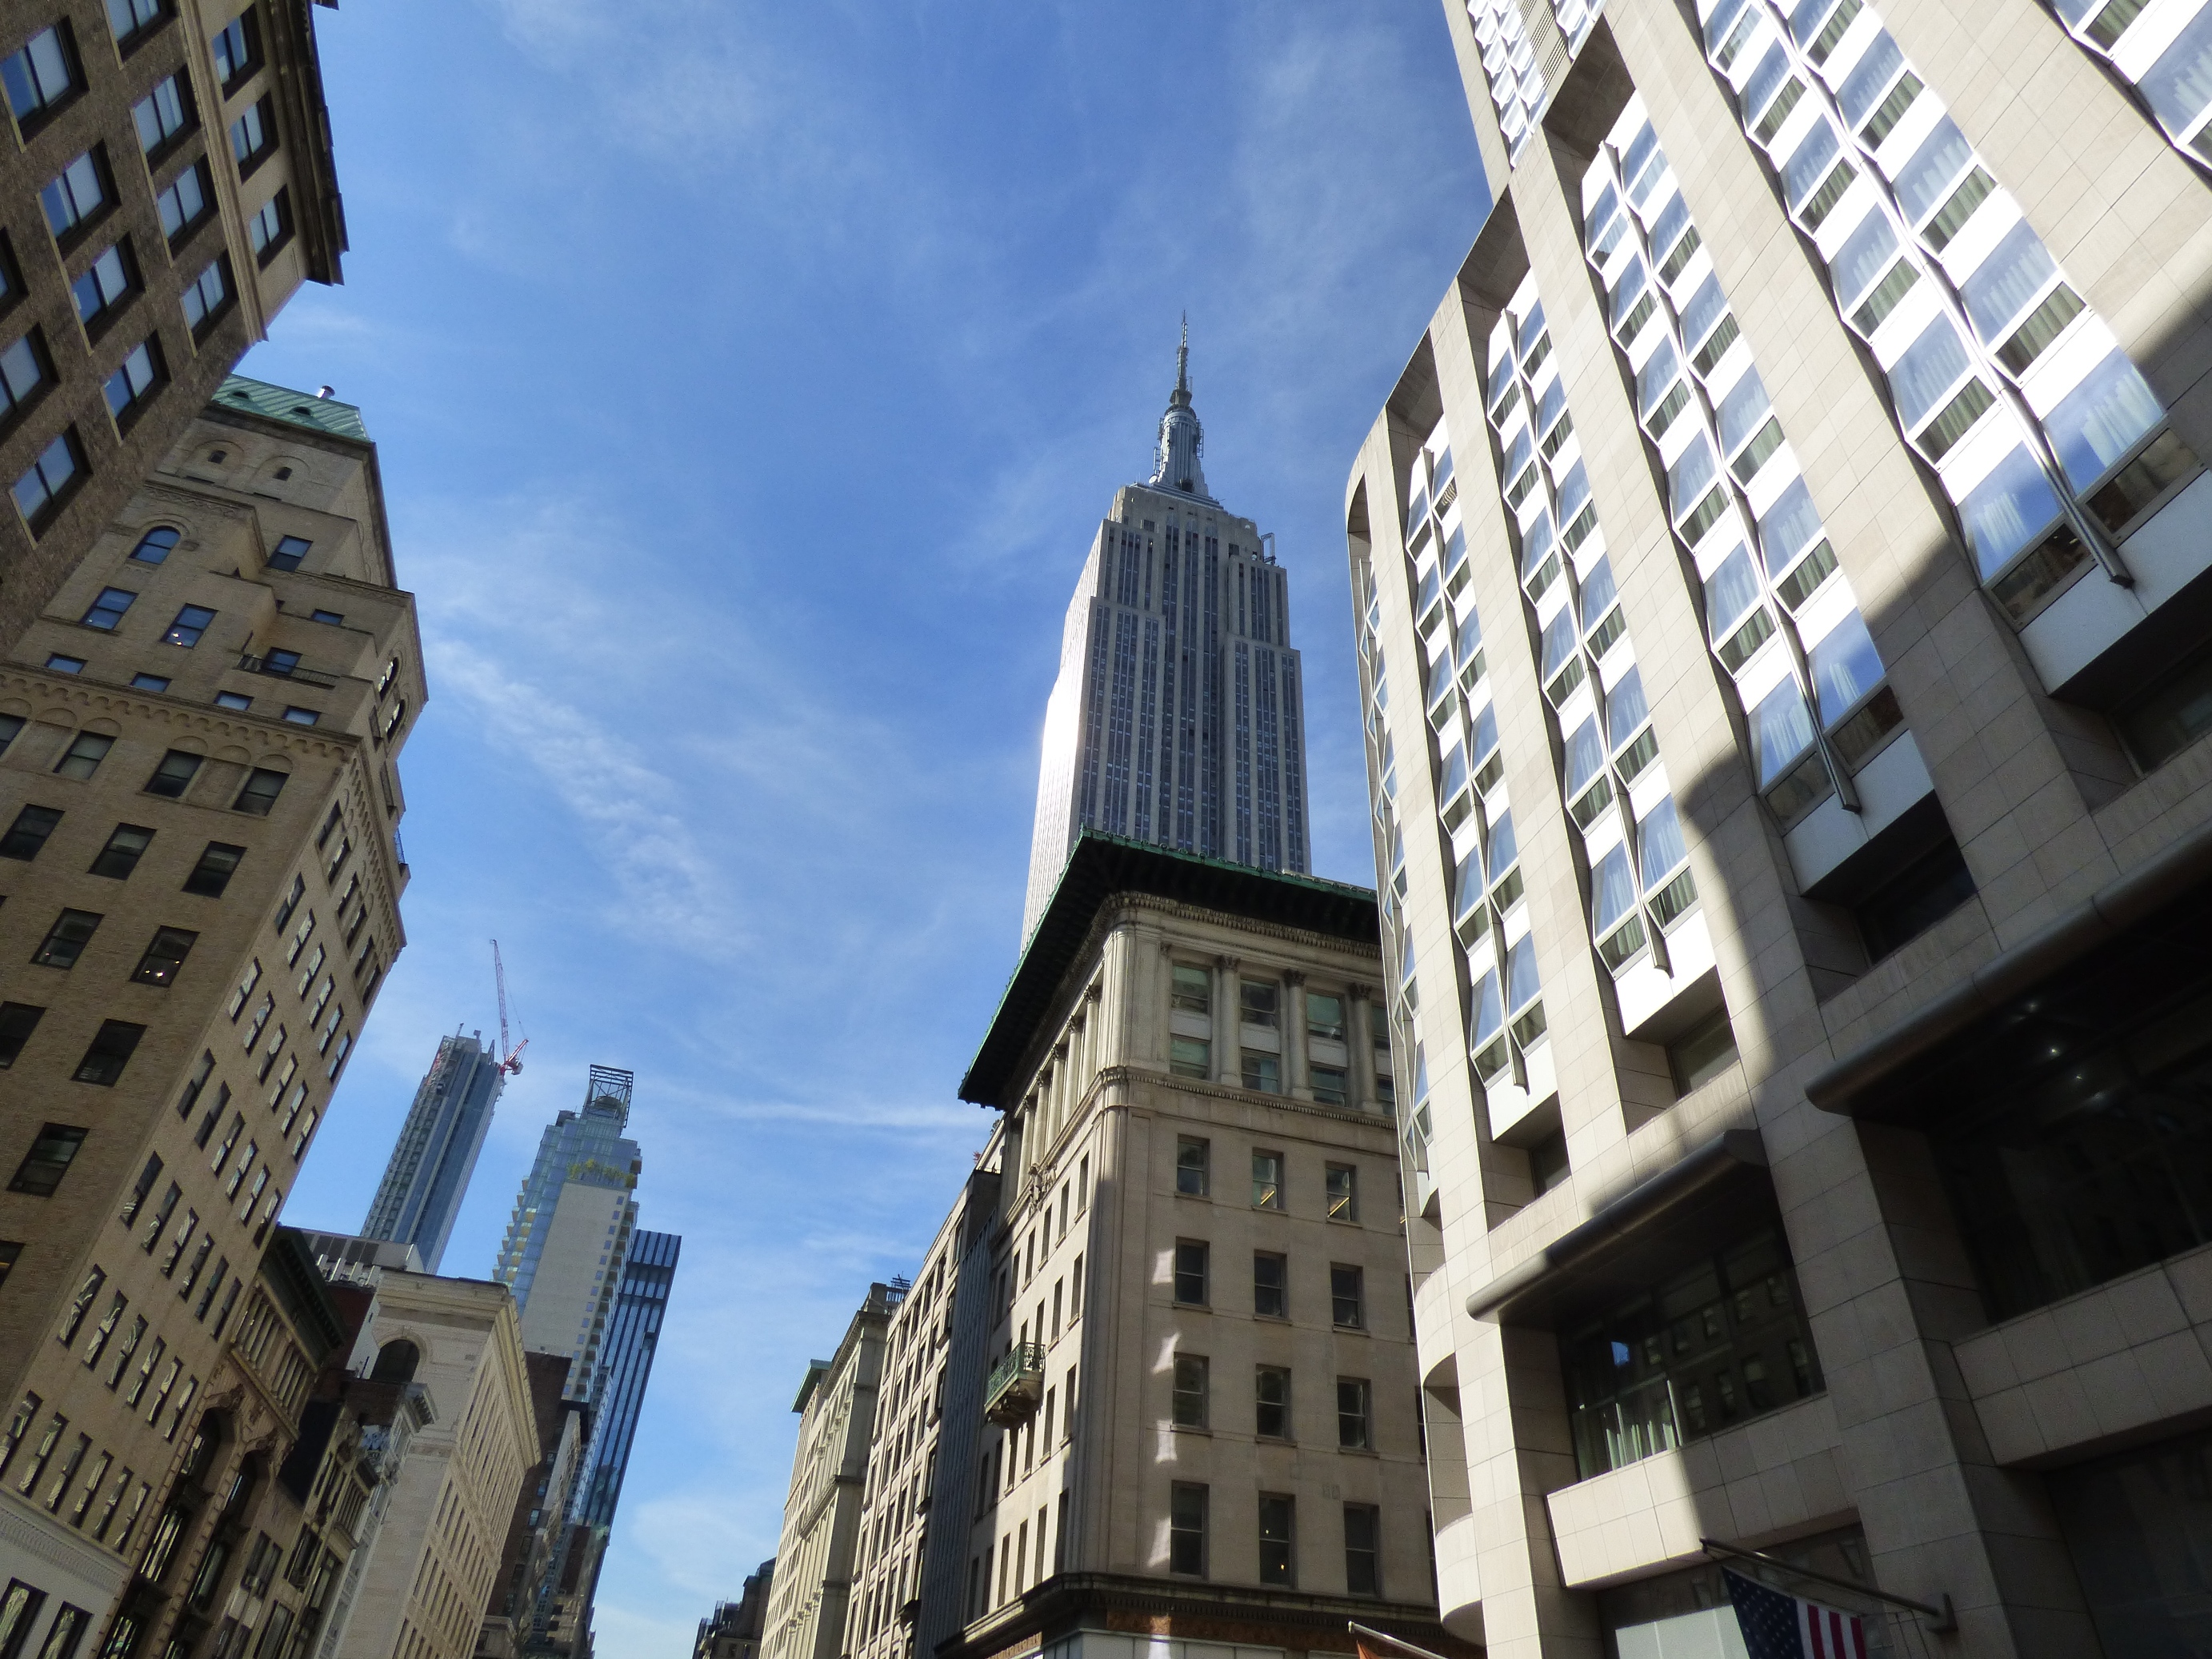 Az Empire State Building New York város 102 emeletes, 381 méter magas épülete és egyik jelképe. A kilátás mellett a remek múzeumártis érdemes megnézni. A szó szoros értelmében részese lehetsz az építési folyamatnak.